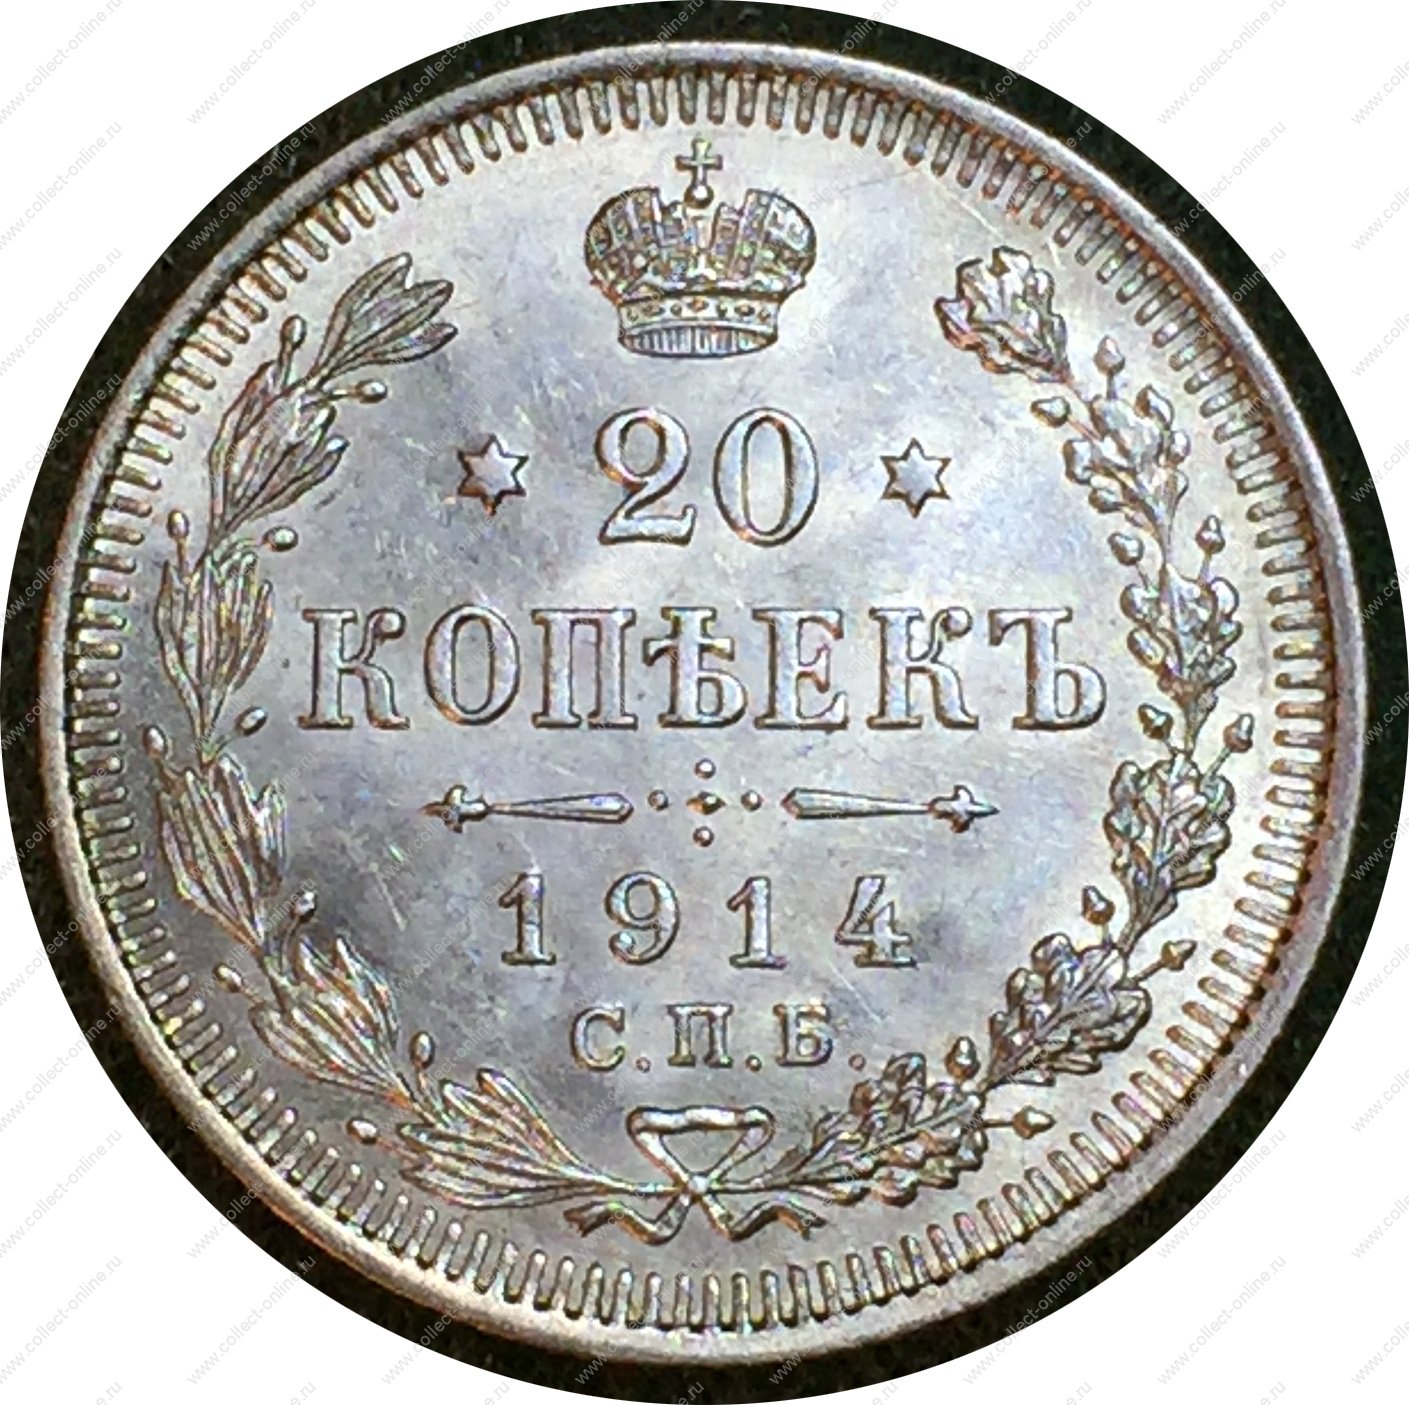 П е п се. Монета 20 копеек с двуглавым орлом. Золото России 1914. Орел Россия 1791.